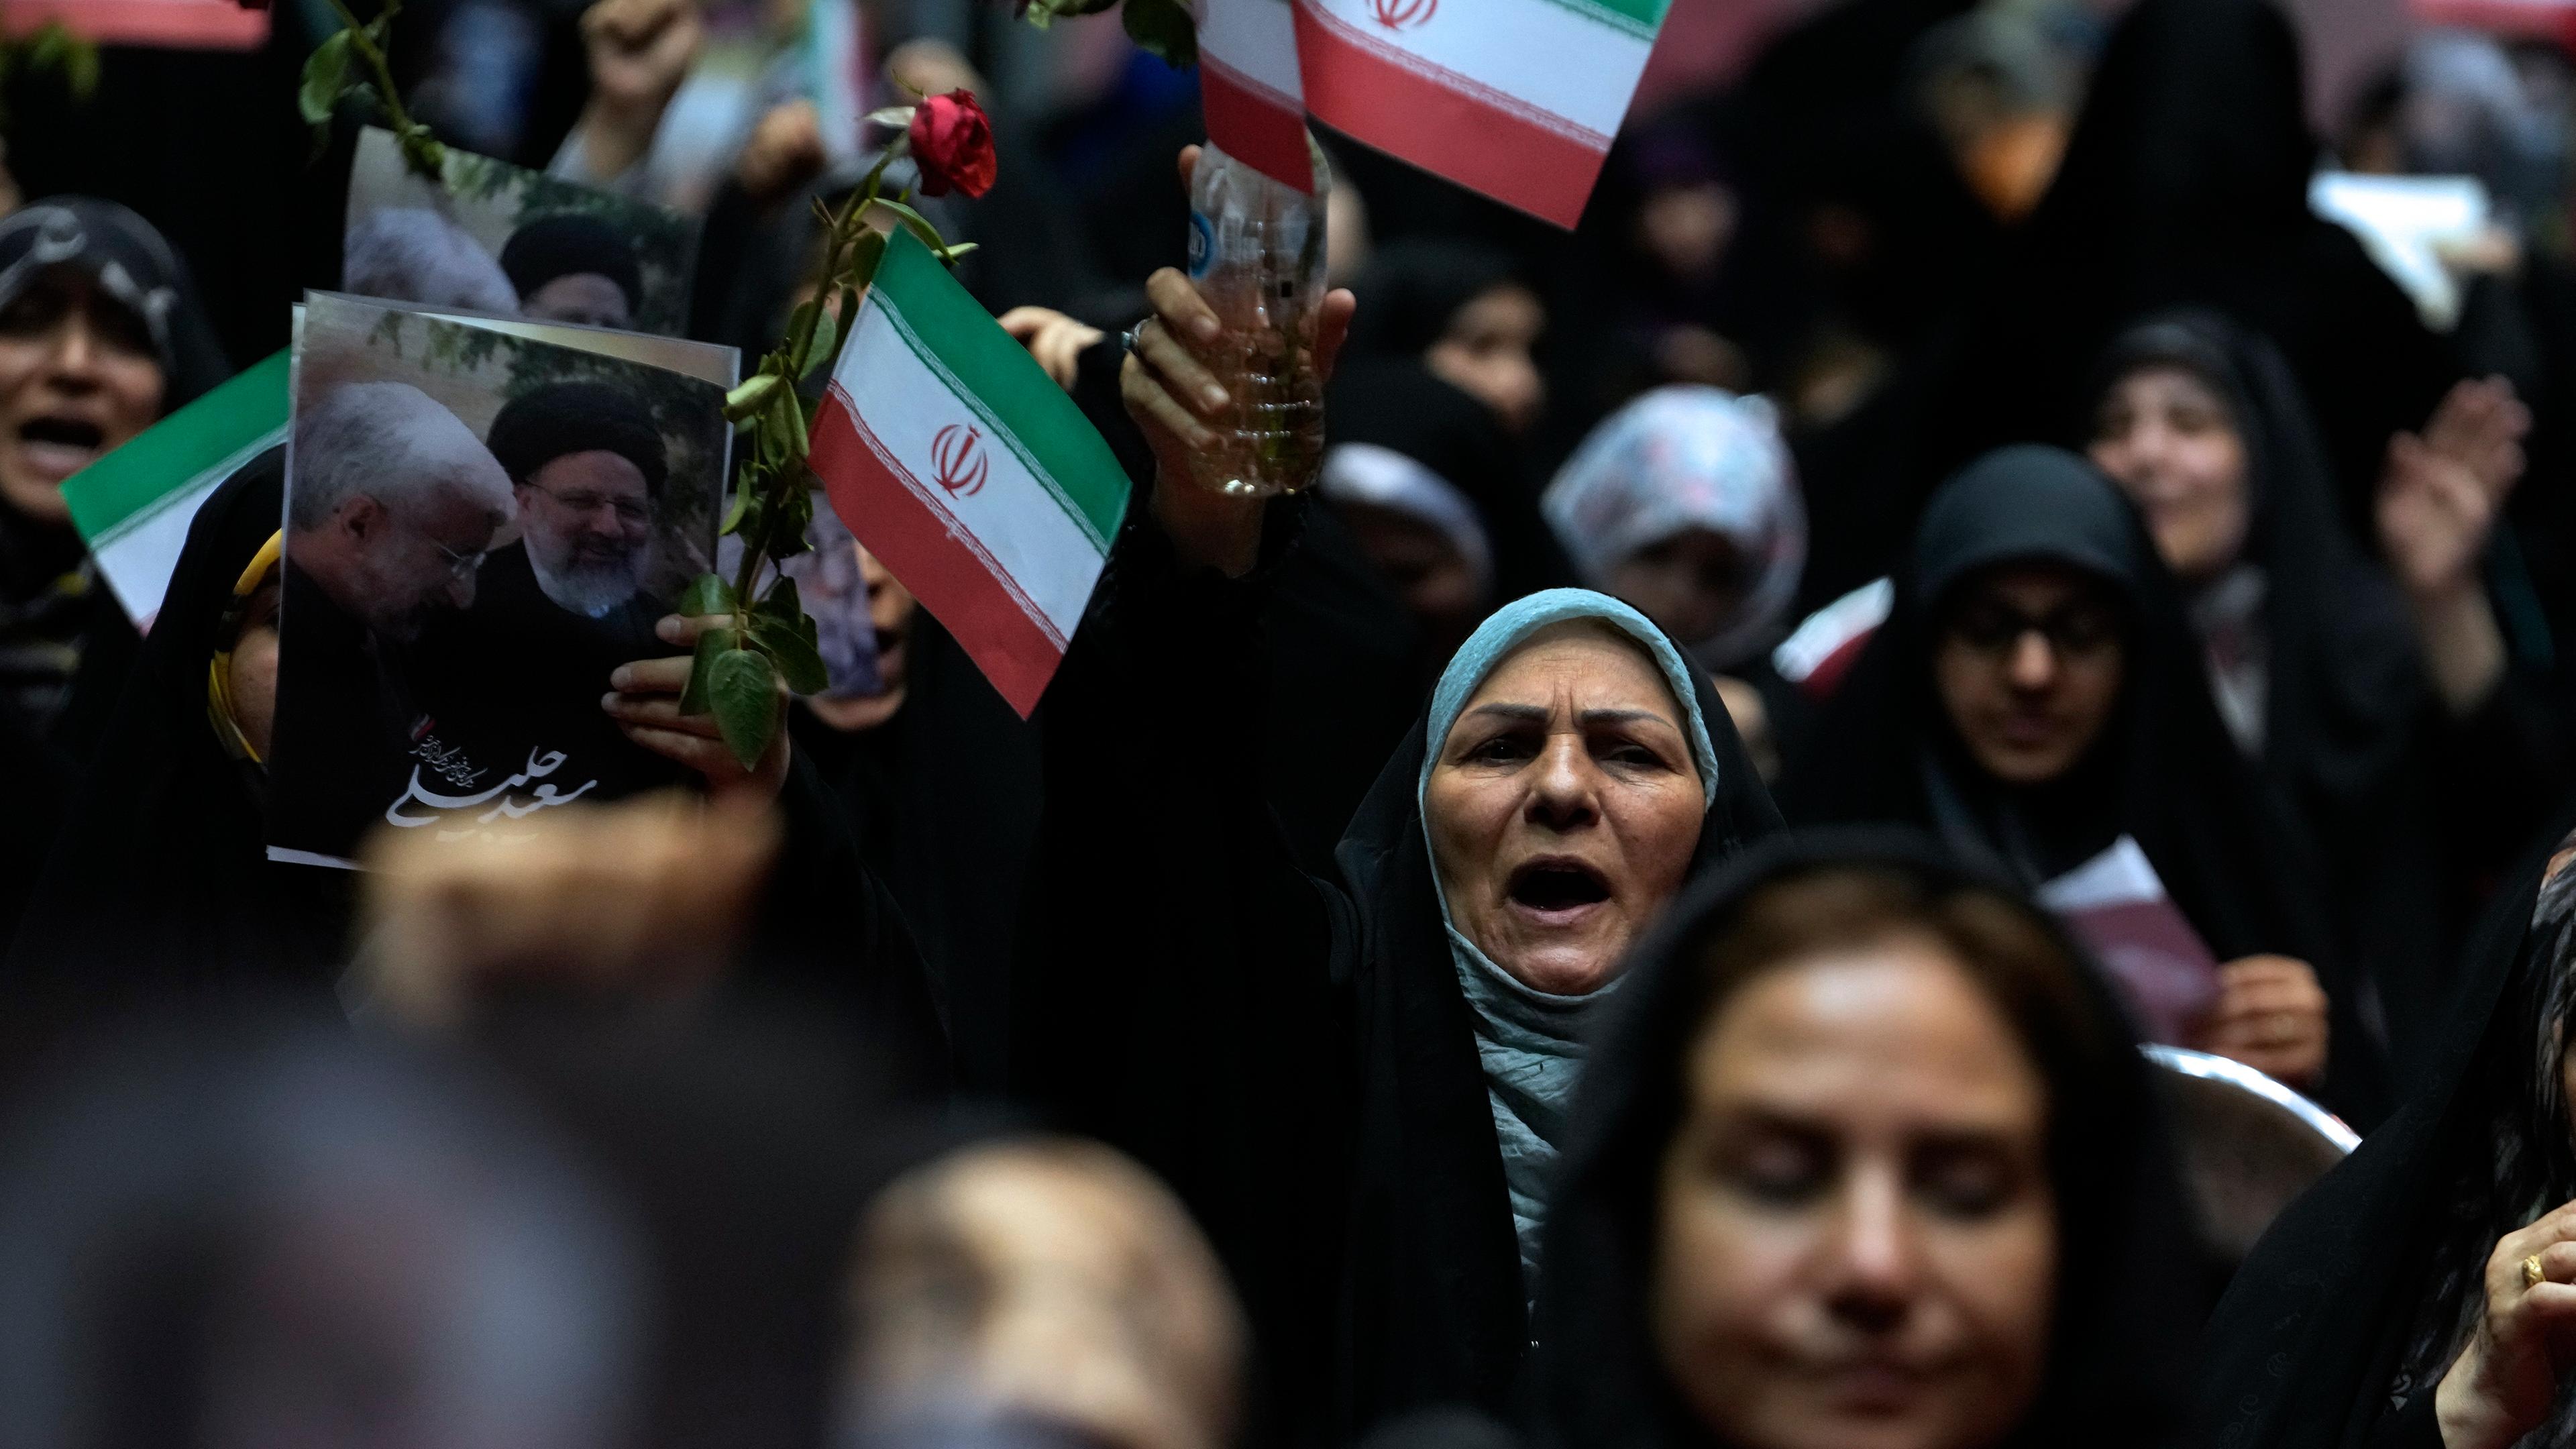 Menschen auf einer Wahlkampfveranstaltung halten iranische Fahnen hoch.